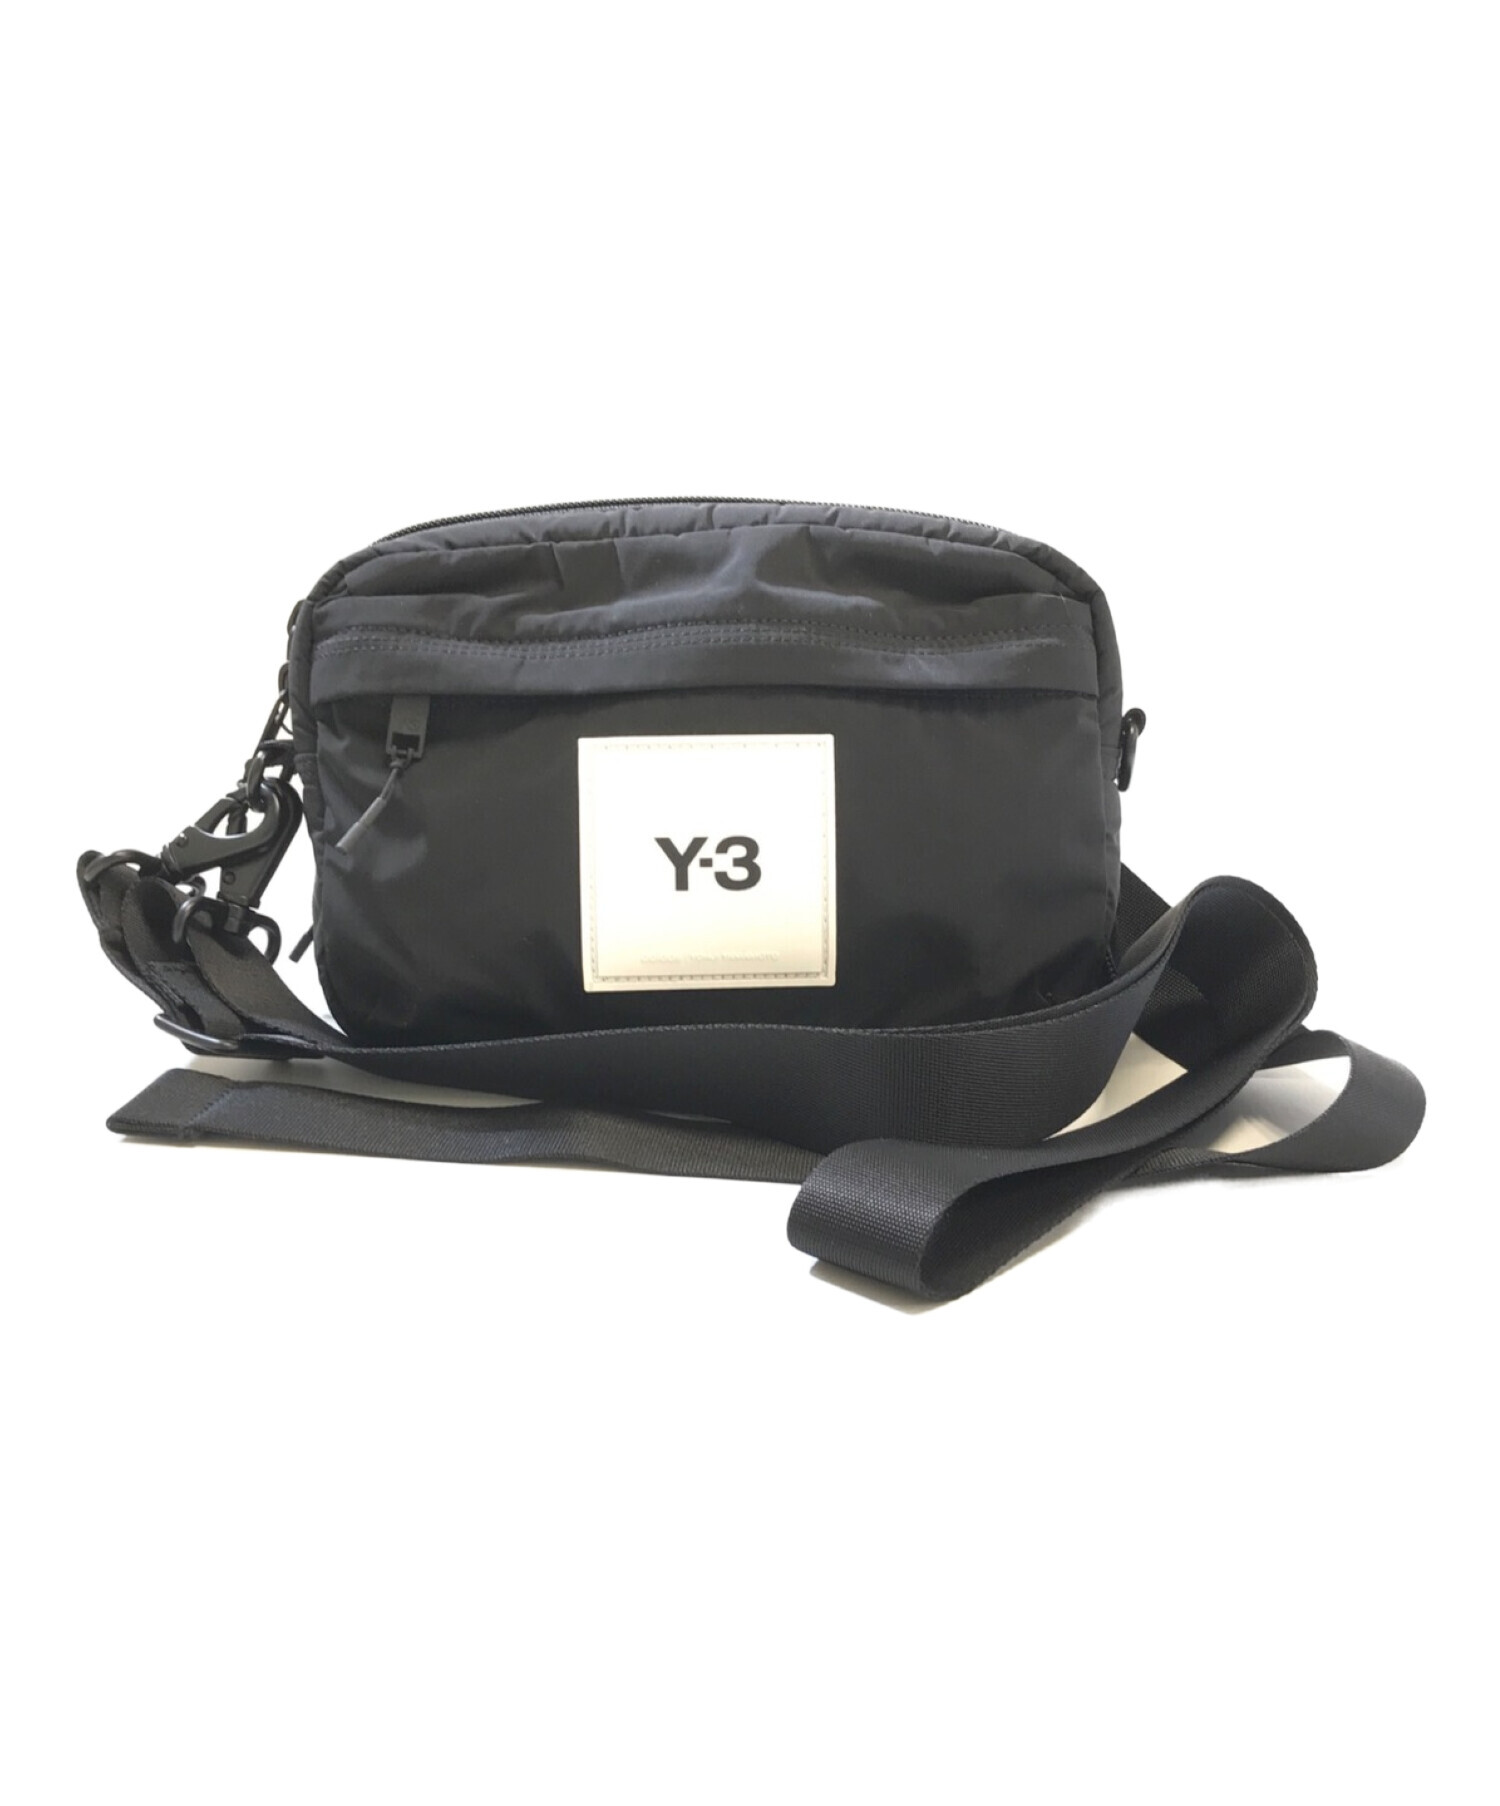 Y-3 (ワイスリー) ショルダーバッグ ブラック サイズ:表記なし 未使用品